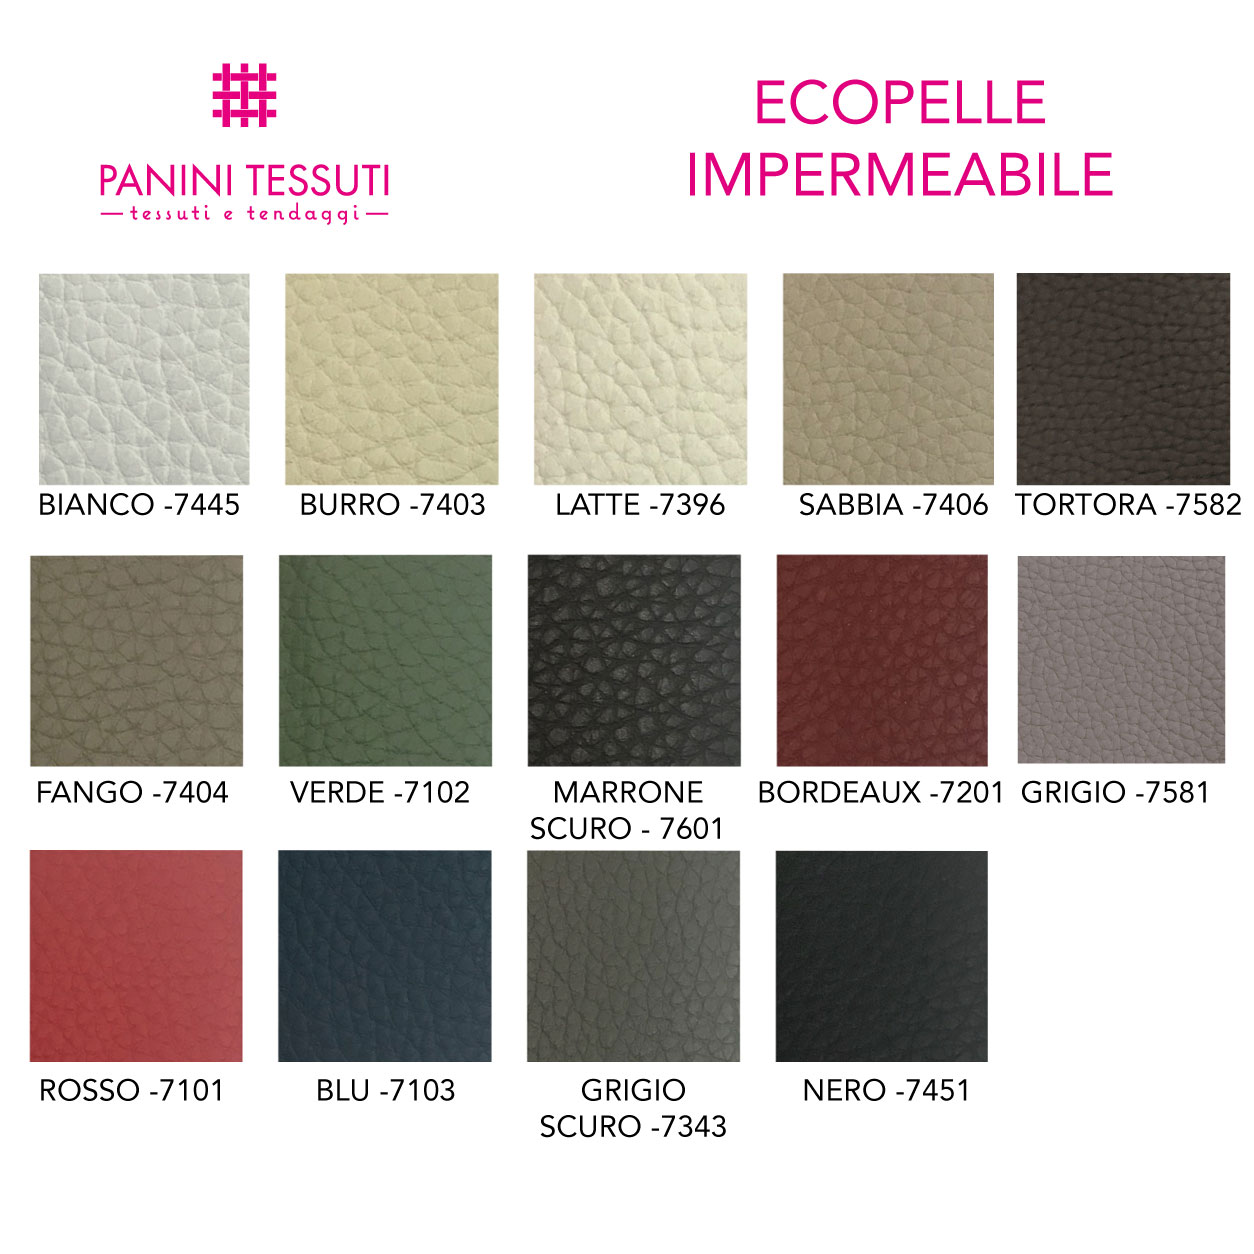 Ecopelle impermeabile cartella colore shopware (6)